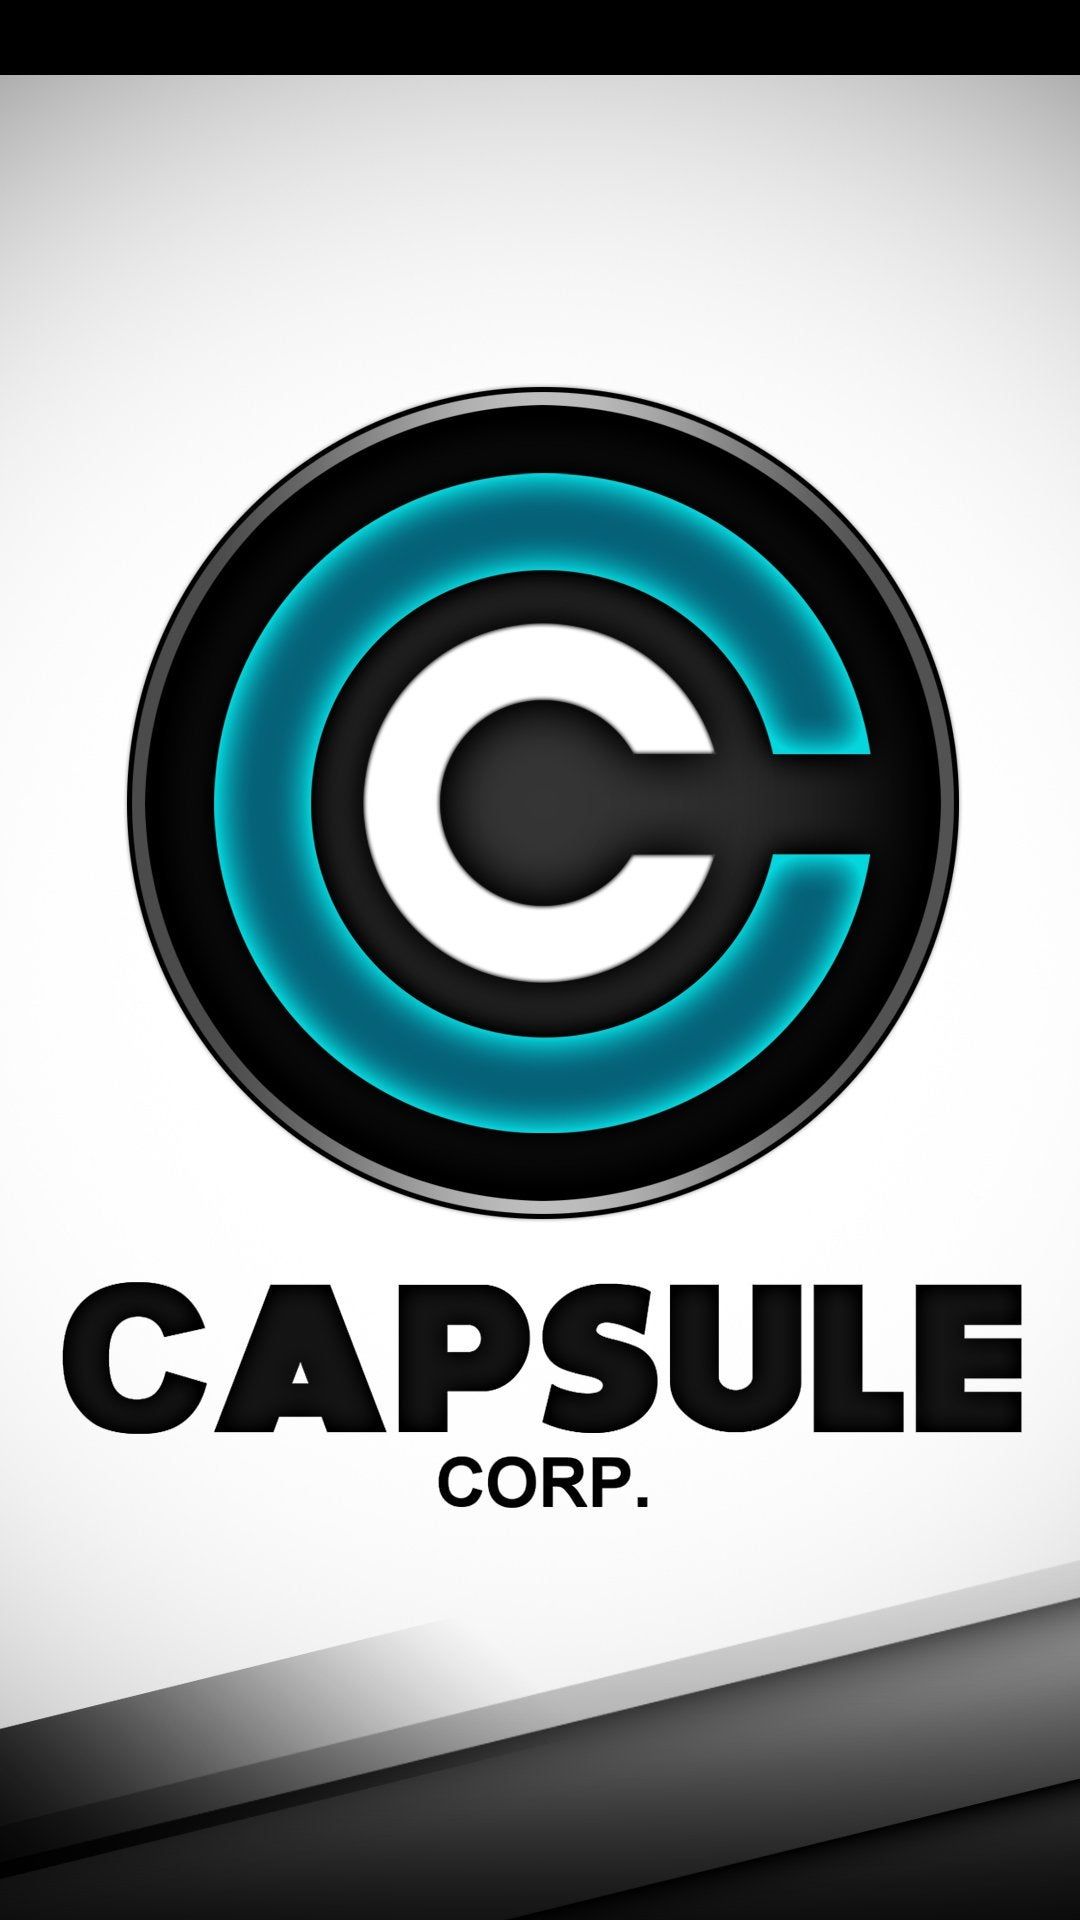 My Revamped Capsule Corp Phone Wallpaper! :D